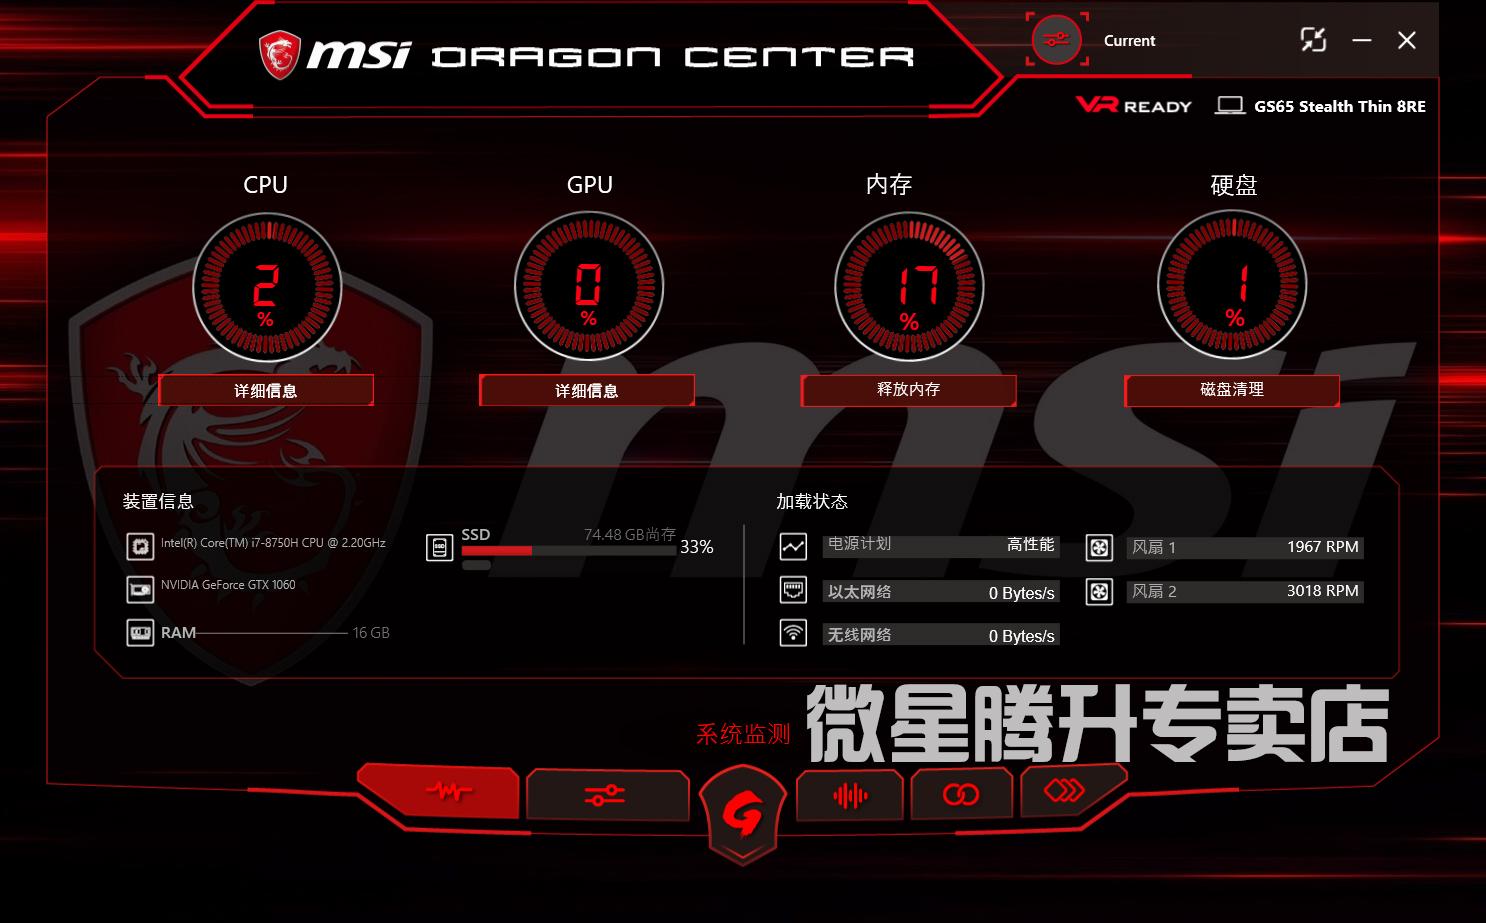 dragon center 2.0 download ge20 series